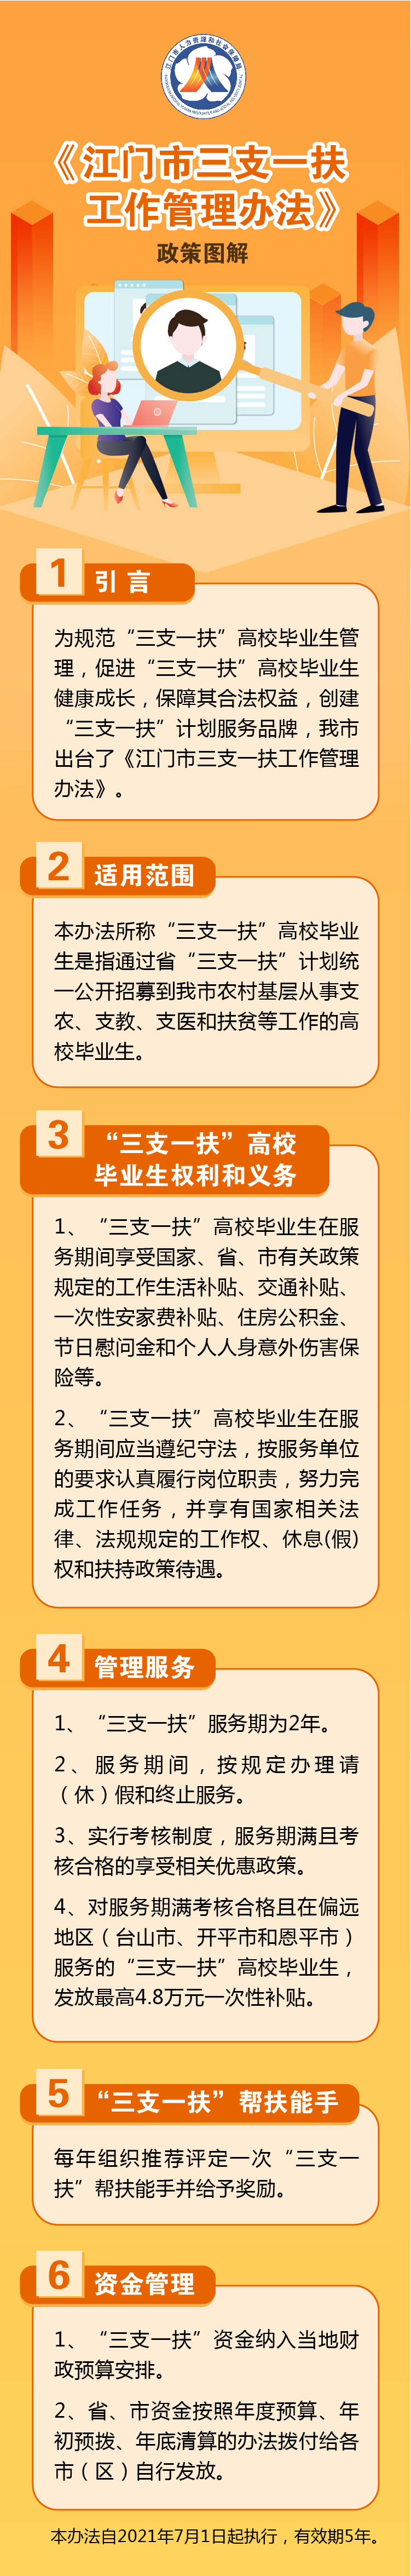 附件5：《江门市“三支一扶”工作管理办法》政策图解.jpg